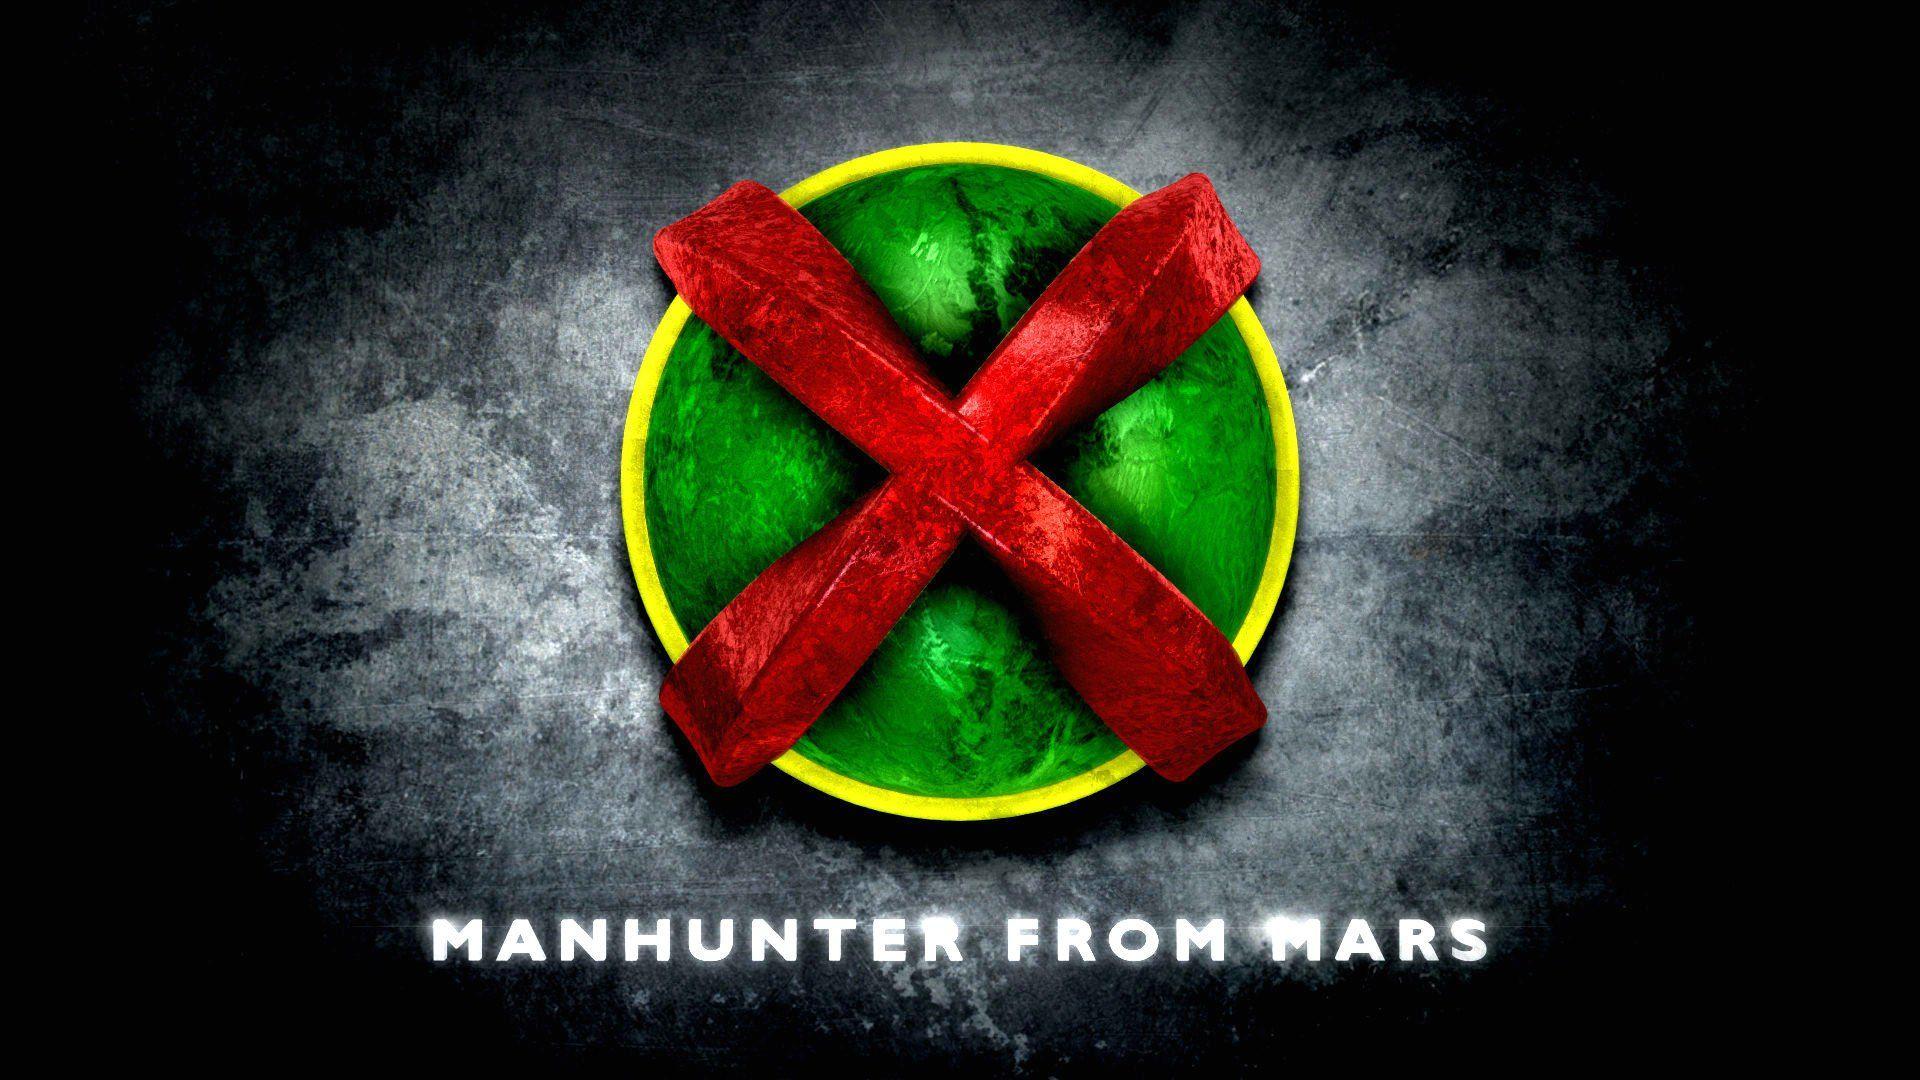 Martian Manhunter Wallpaper, Full HDQ Martian Manhunter Picture